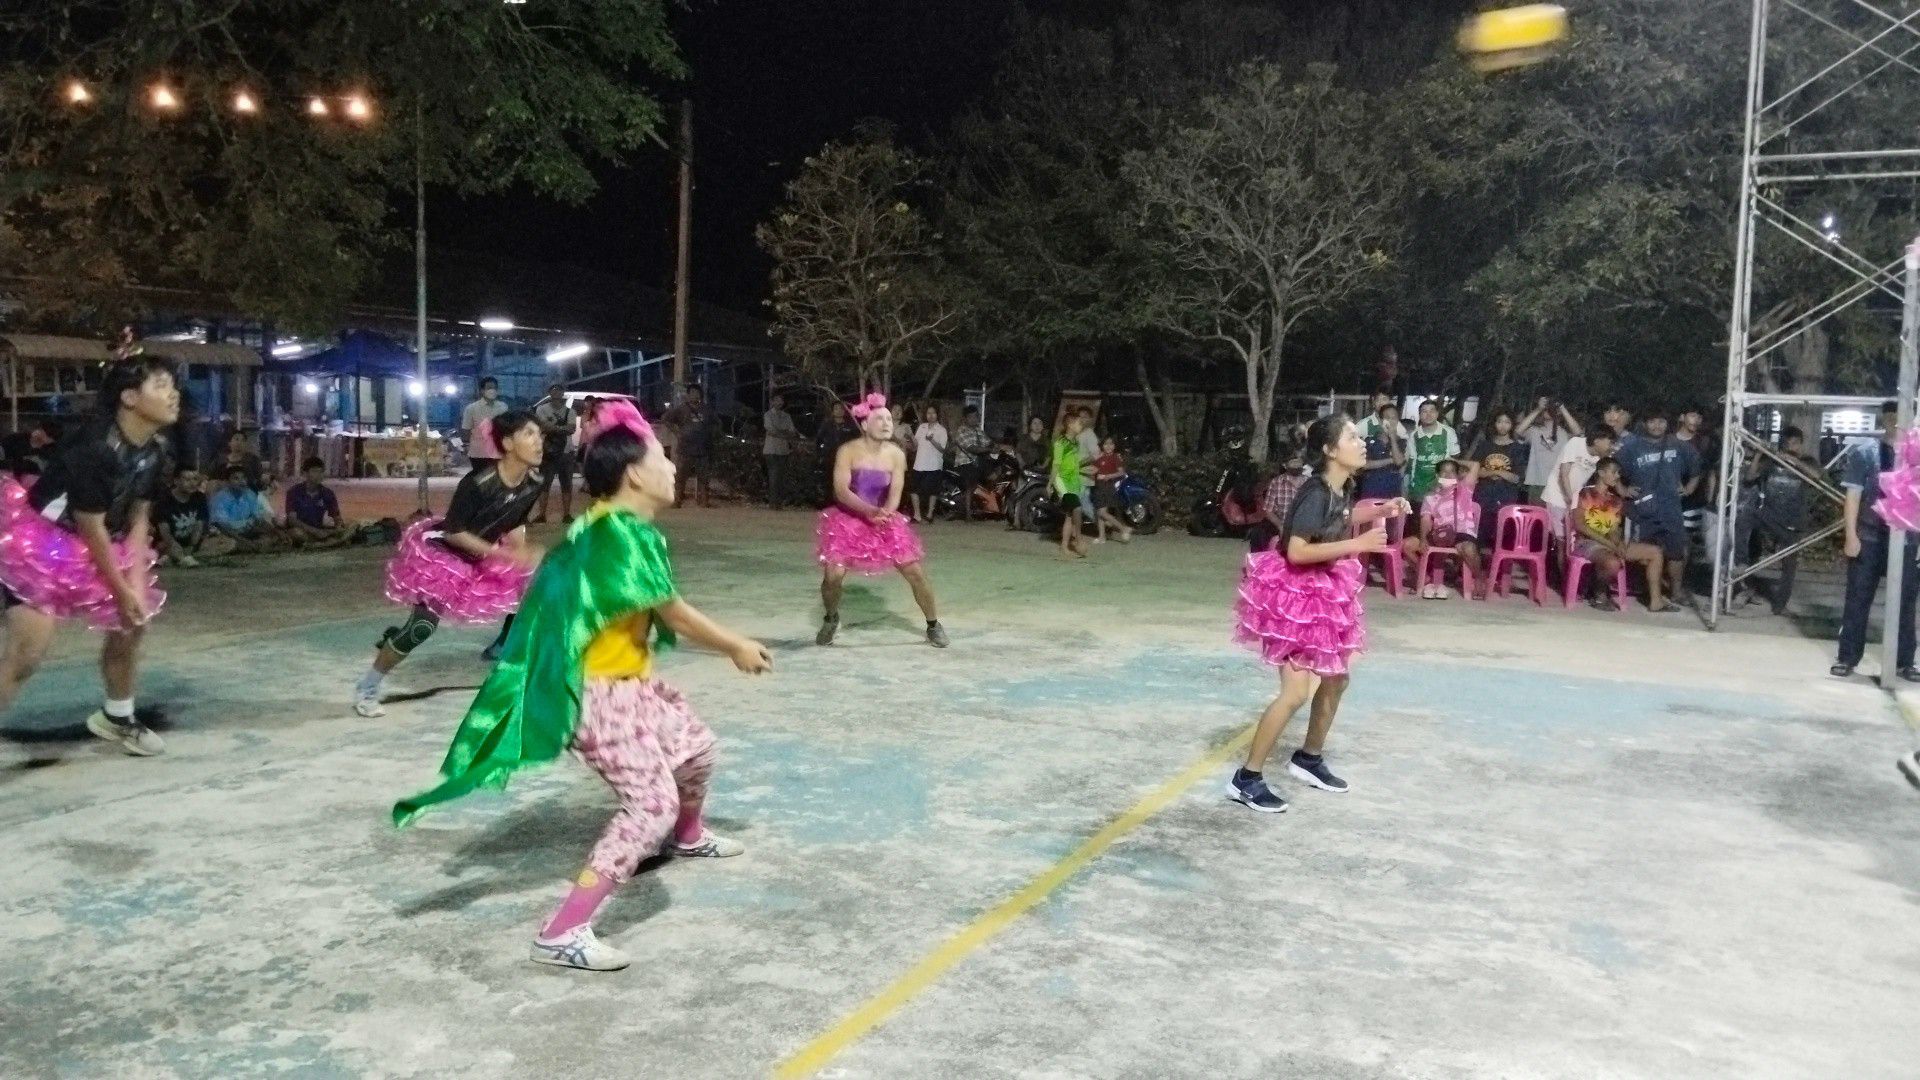 สุพรรณบุรี-สีสันการแข่งขันวอลเลย์บอลสาวเหล็กหัวหน้าทีมเจ้าภาพแปลงร่างเป็นดำดง